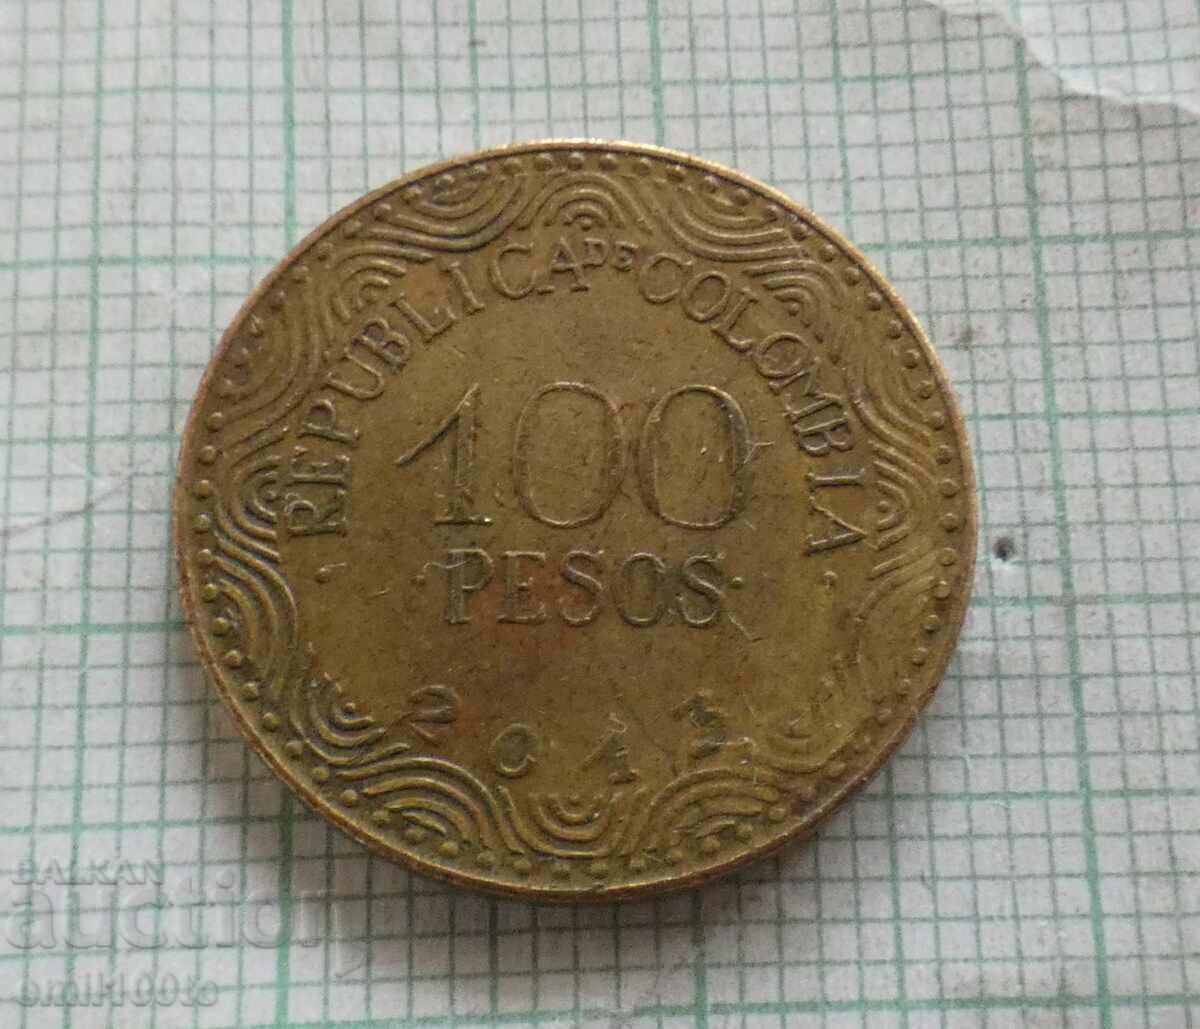 100 песос 2013 година Колумбия